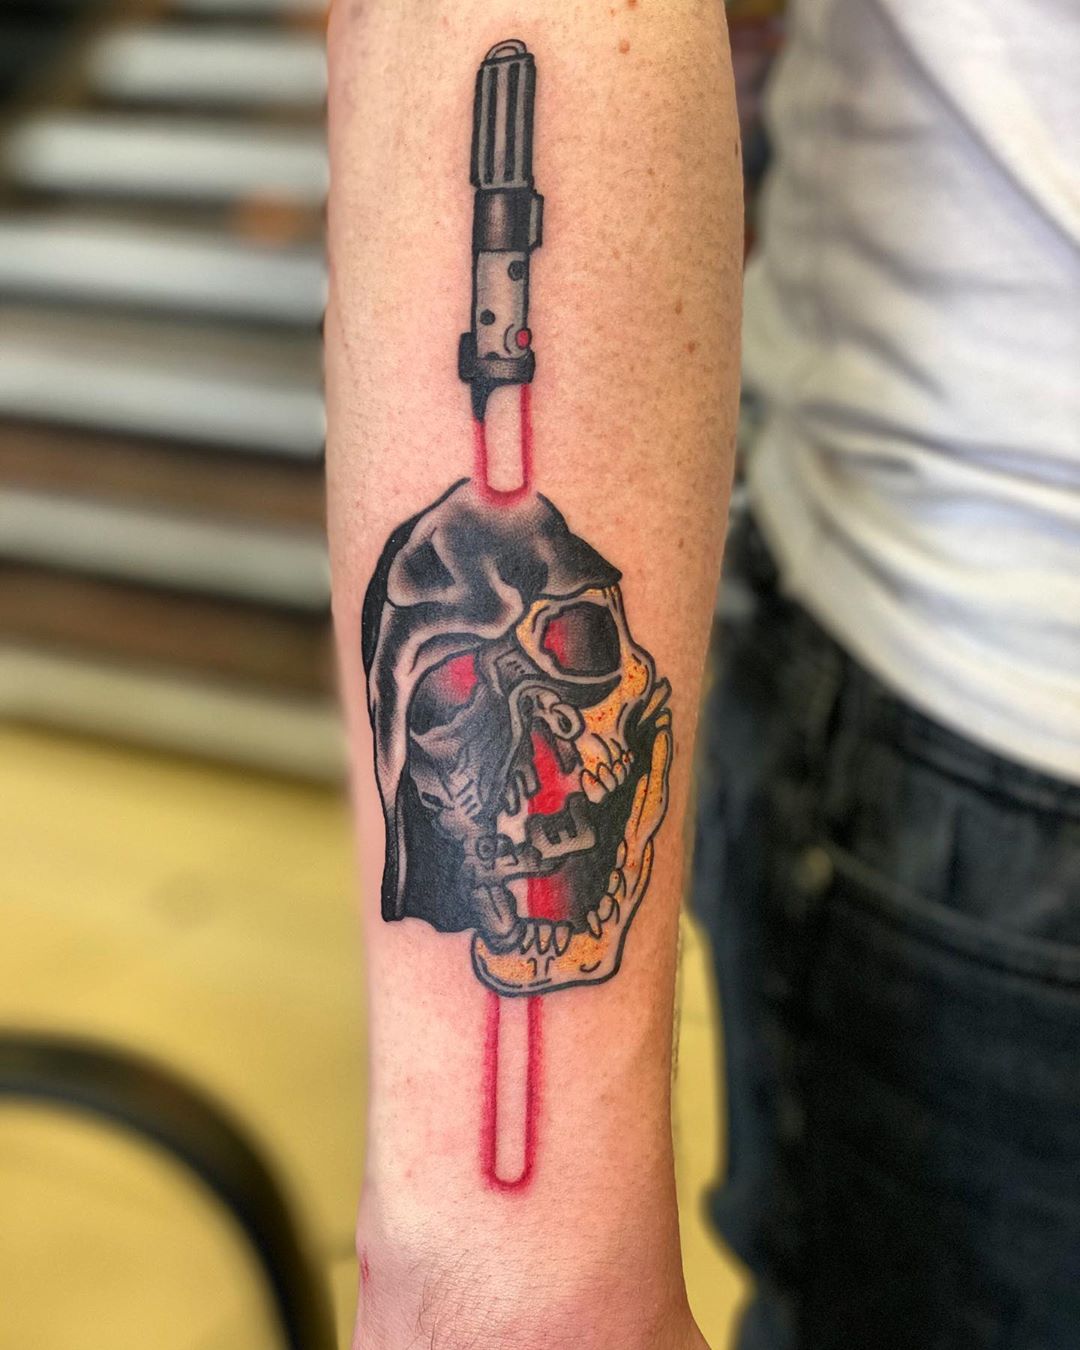 Darth Vader gruesome lightsaber tattoo